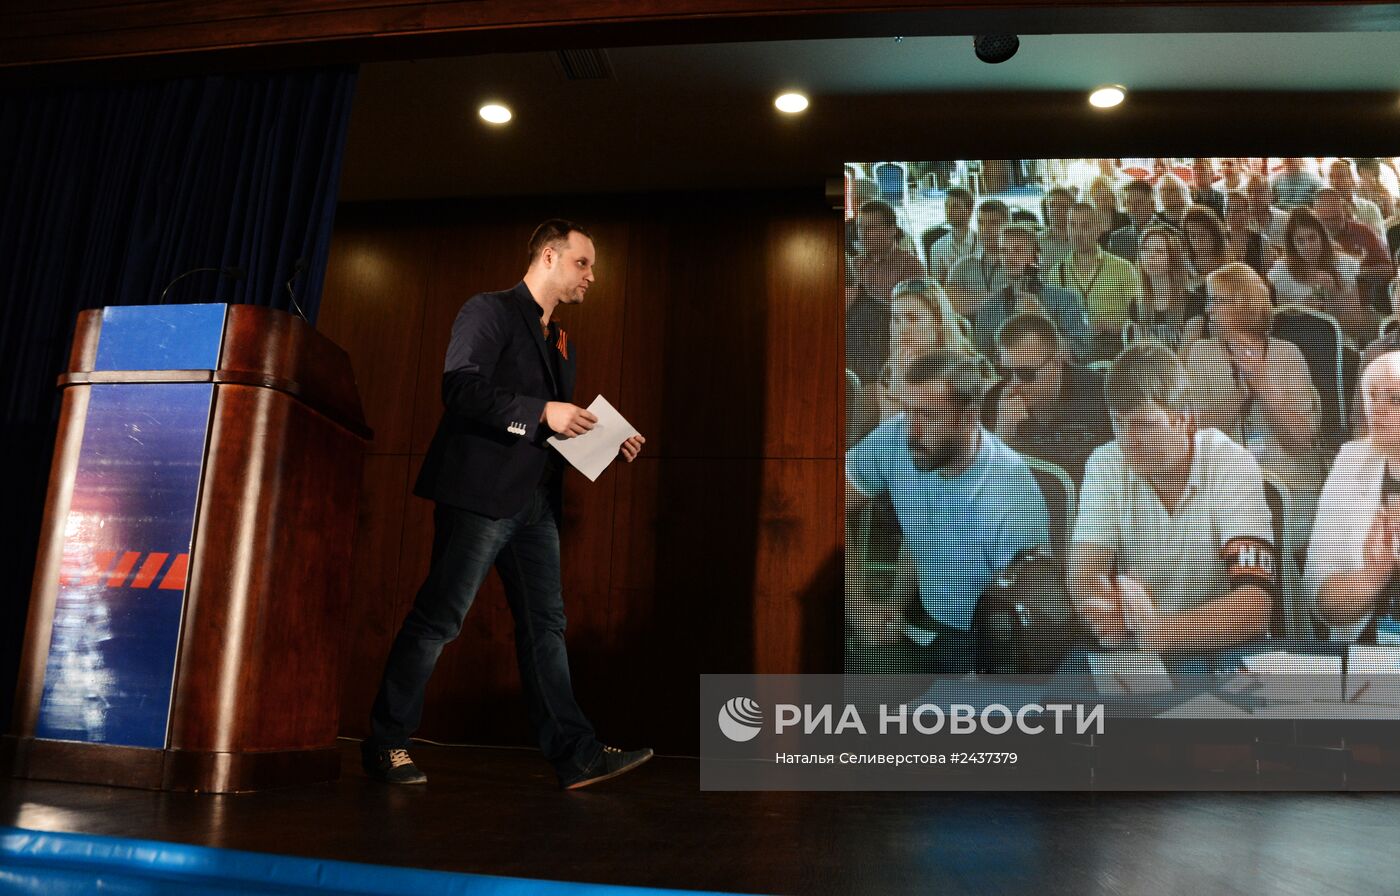 Cъезд народных представителей "Донецк 2014"